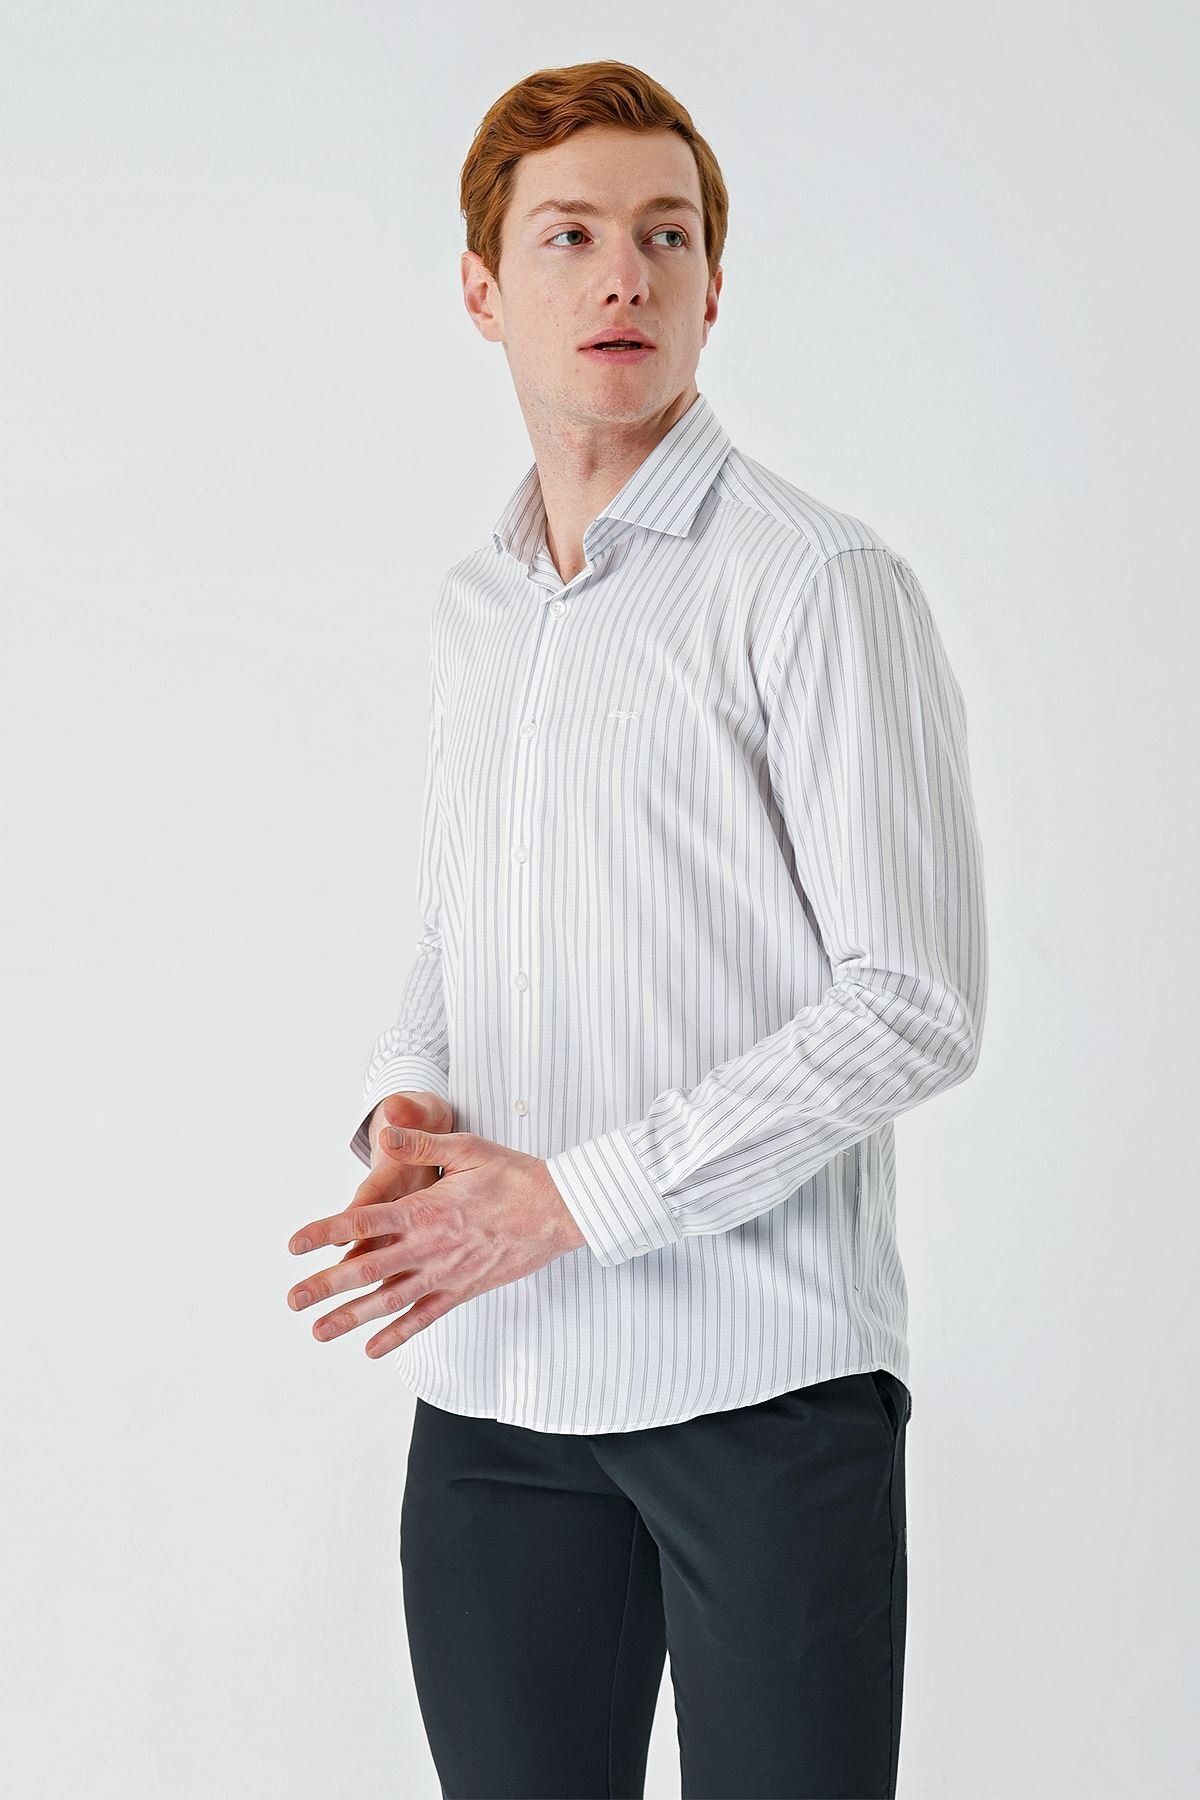 İmza Beyaz Uzun Kollu Çizgili Armürlü Cepsiz Pamuklu Klasik Slim Fit Dar Kesim Gömlek 1004240229